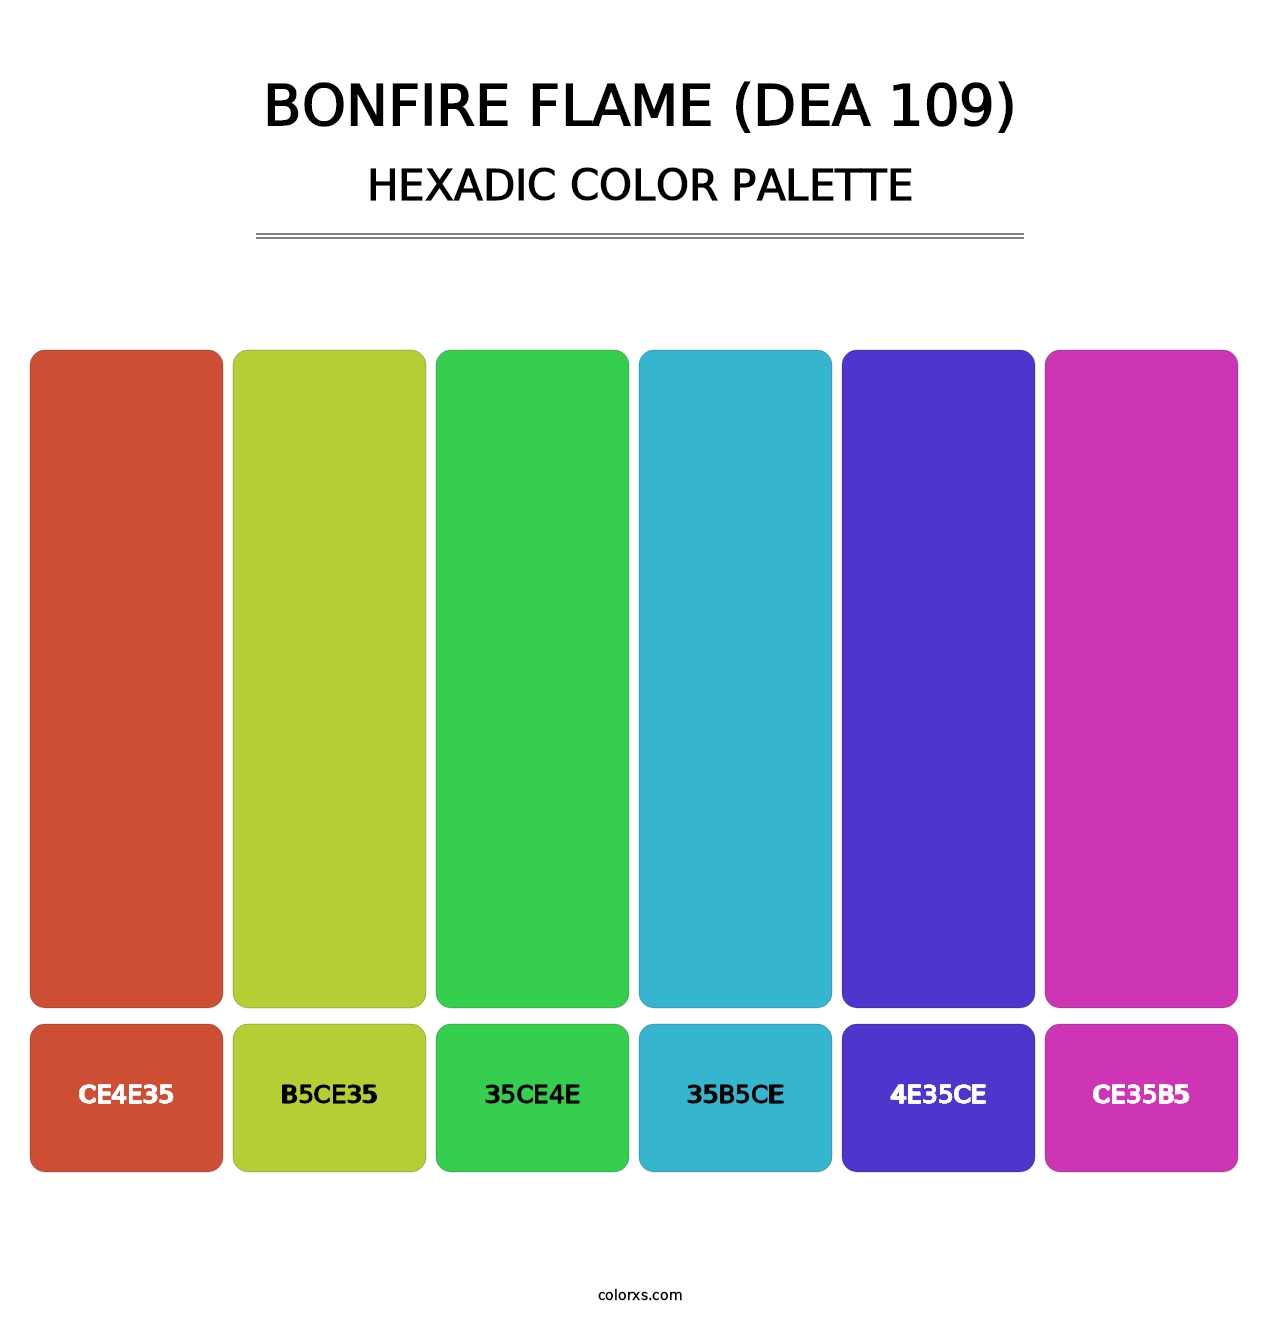 Bonfire Flame (DEA 109) - Hexadic Color Palette